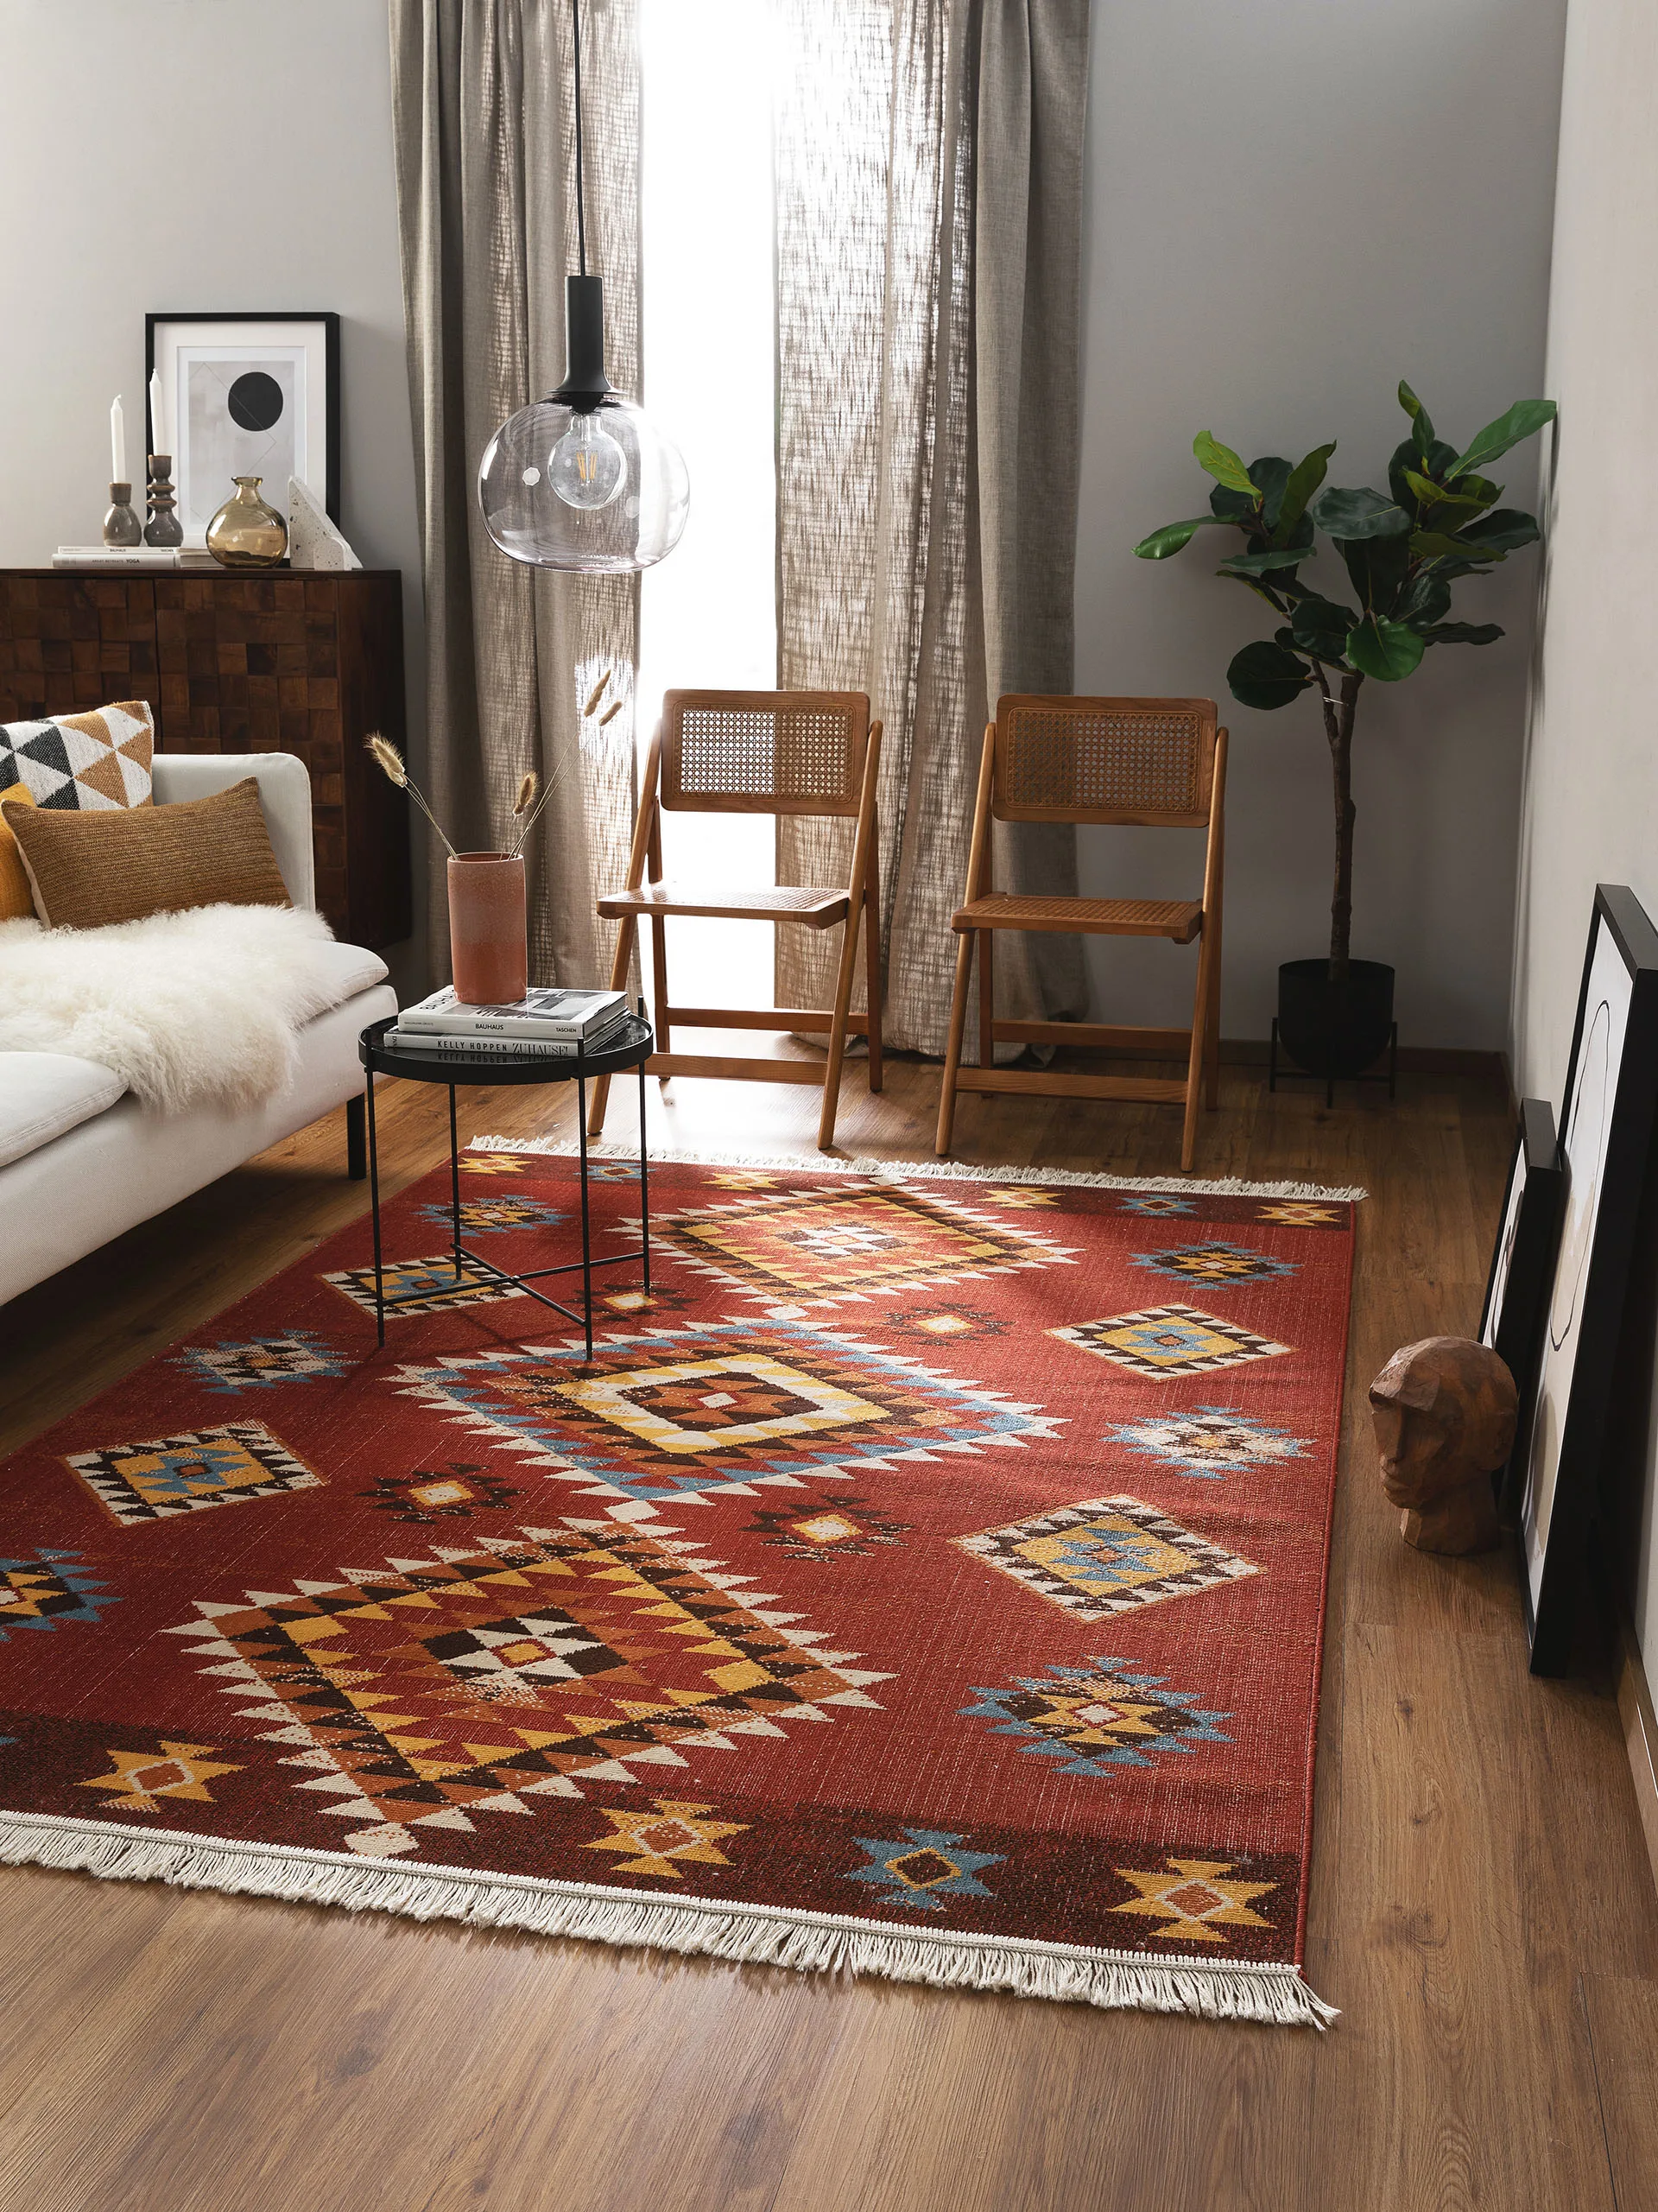 Schlafzimmer im Ethno Style mit einem roten Teppich im Kelim-Design, Pflanzen und Möbeln in natürlichen Brauntönen